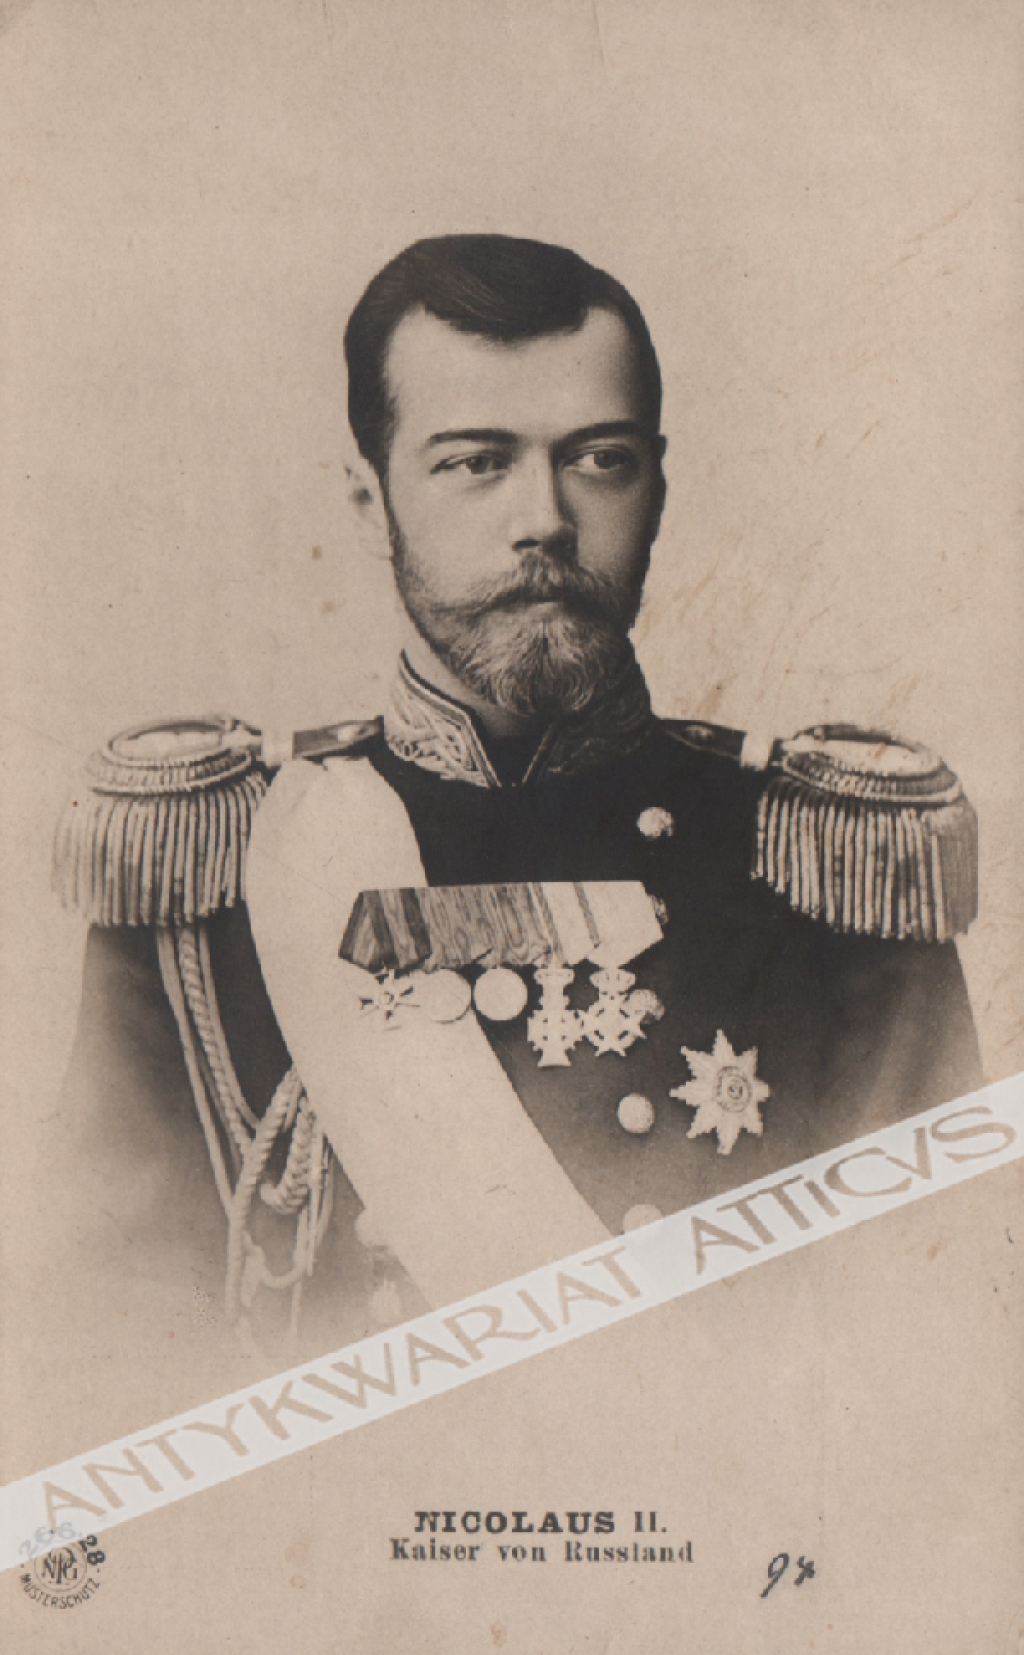 [pocztówka, ok.1905] Nicolaus II. Kaiser von Russland [Mikołaj II. Car Rosji]